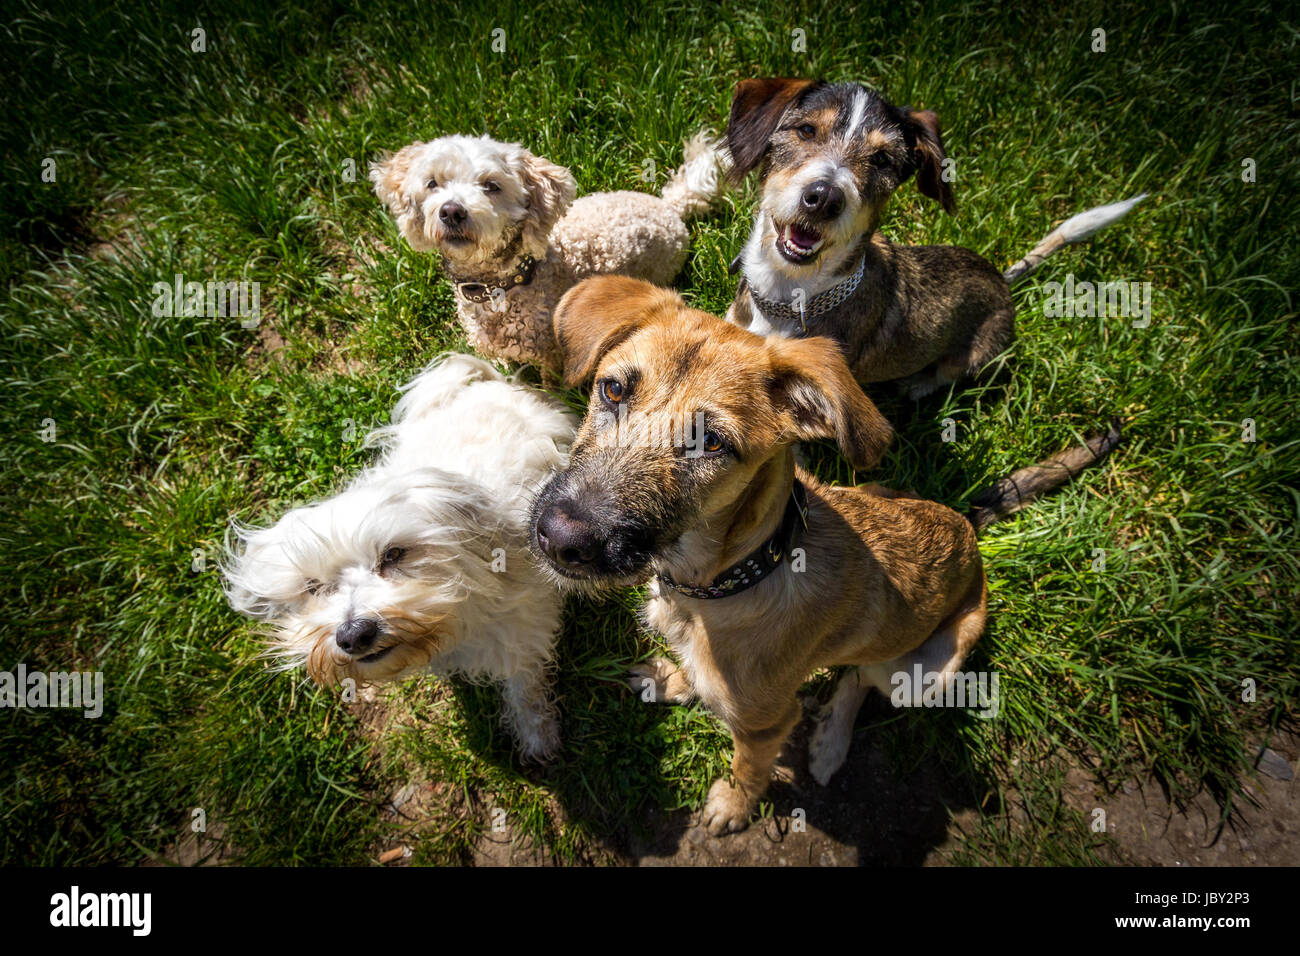 4 Hunde sitzen auf einem Fleck und blicken zum Fotografen hoch der etwas feines zur Belohnung in den Händen hält, Weiwinkel Aufnahme. Stock Photo